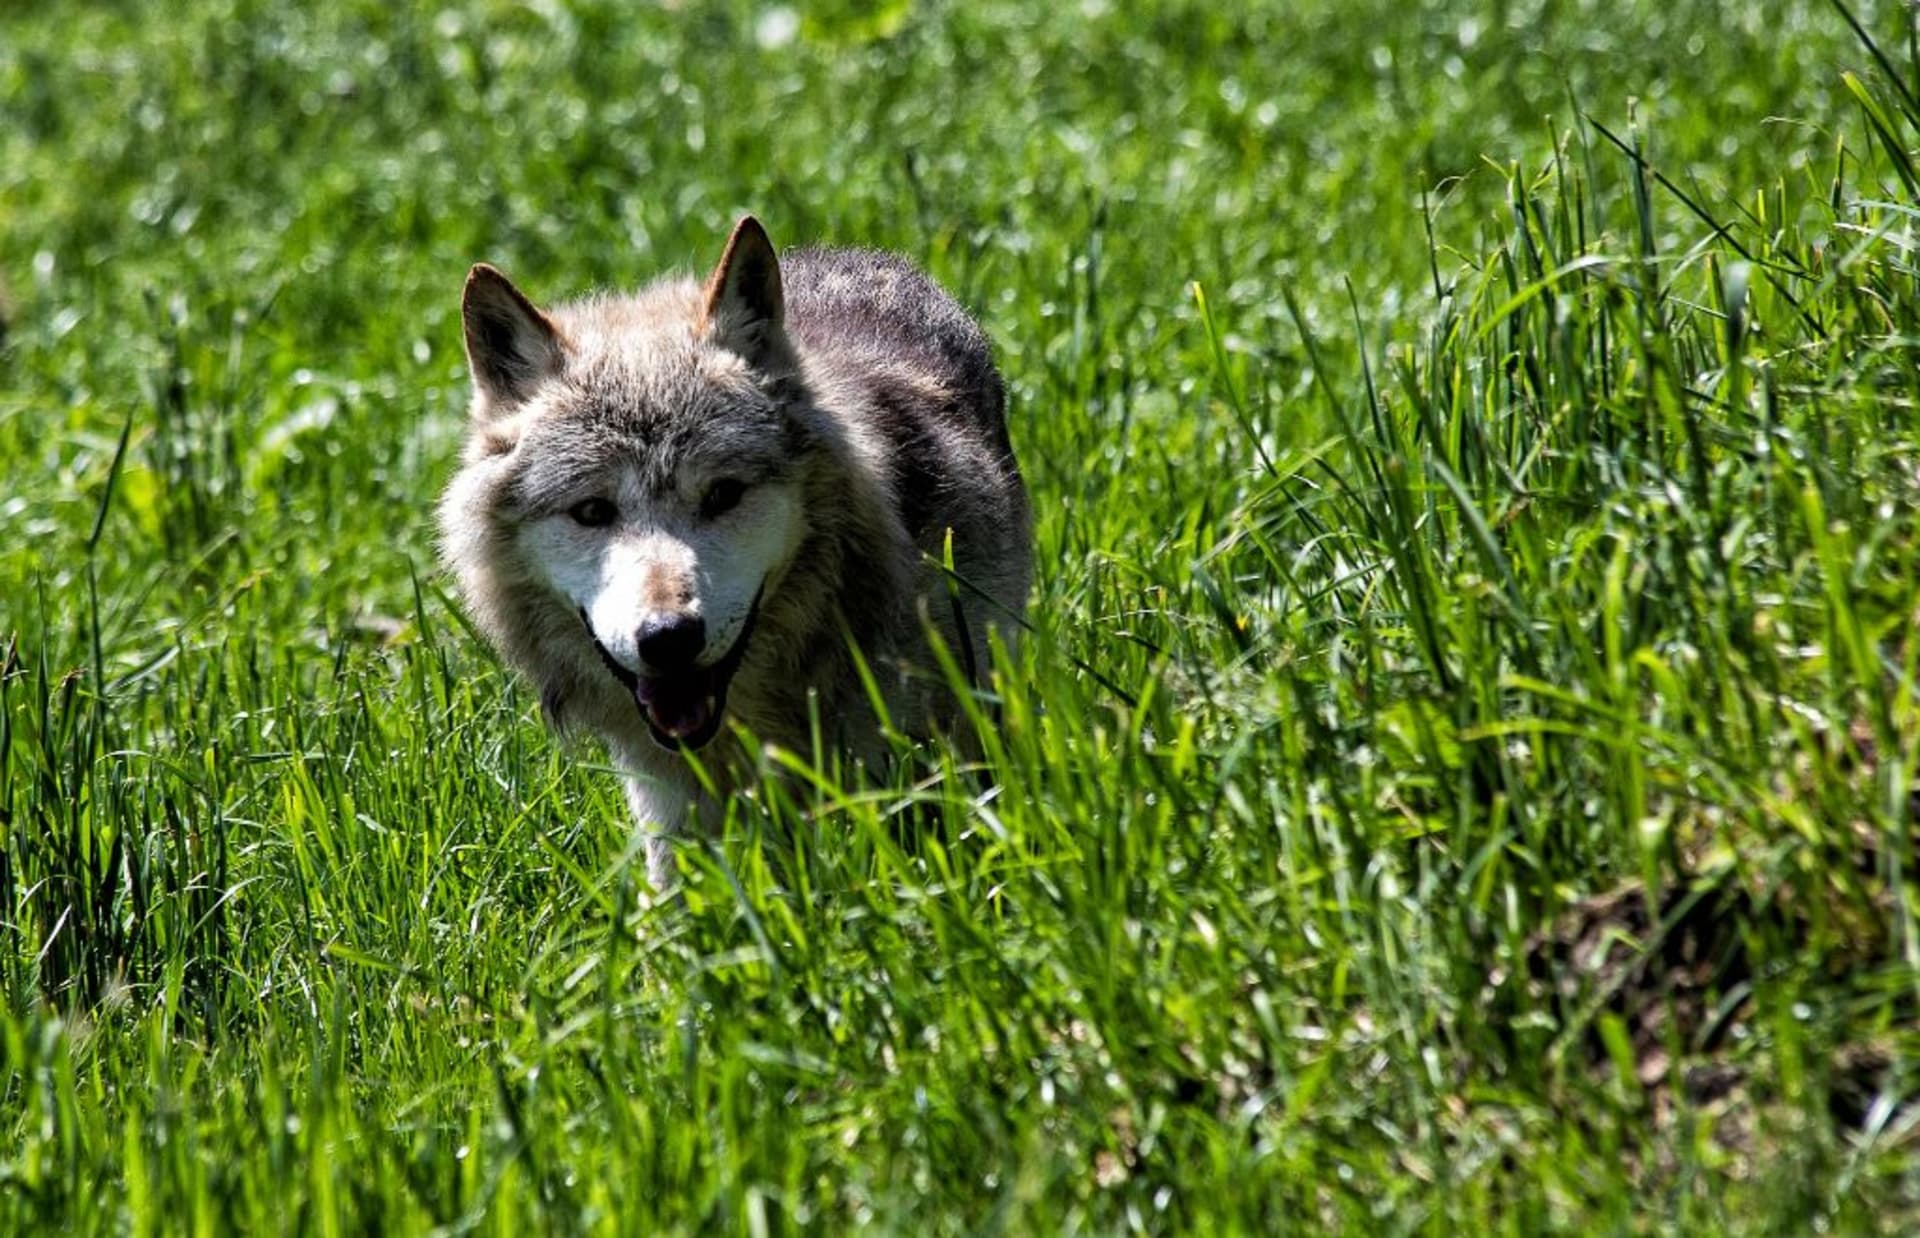 Nezabezpečené pastviny jsou vlky velkým lákadlem. Proto ochránci zvířat